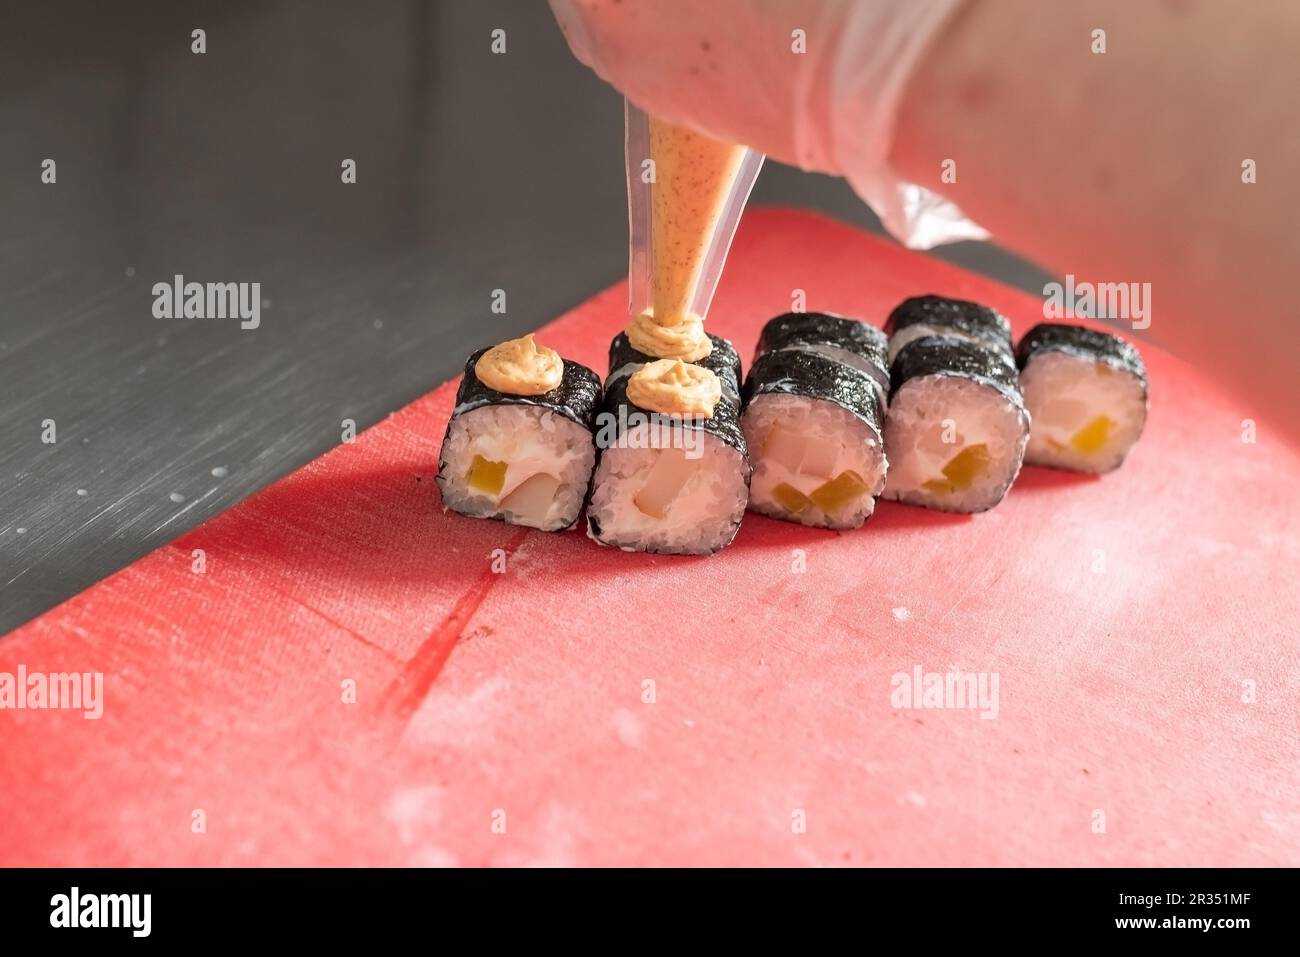 Applicazione di salsa piccante sul sushi con formaggio e daikon. Foto di alta qualità Foto Stock